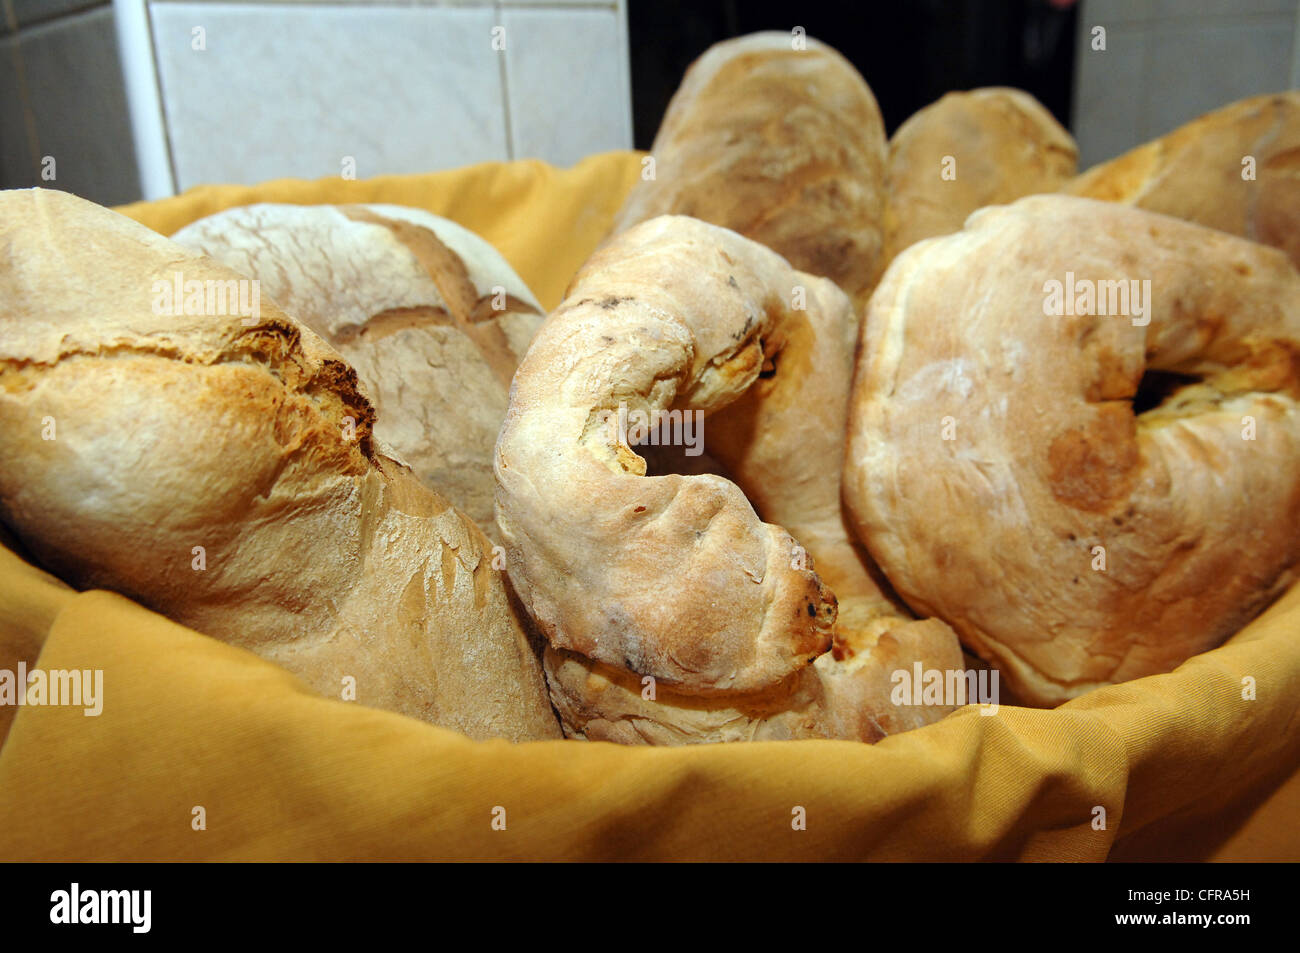 Panier de pain italien artisanat, Basilicate, Italie Banque D'Images